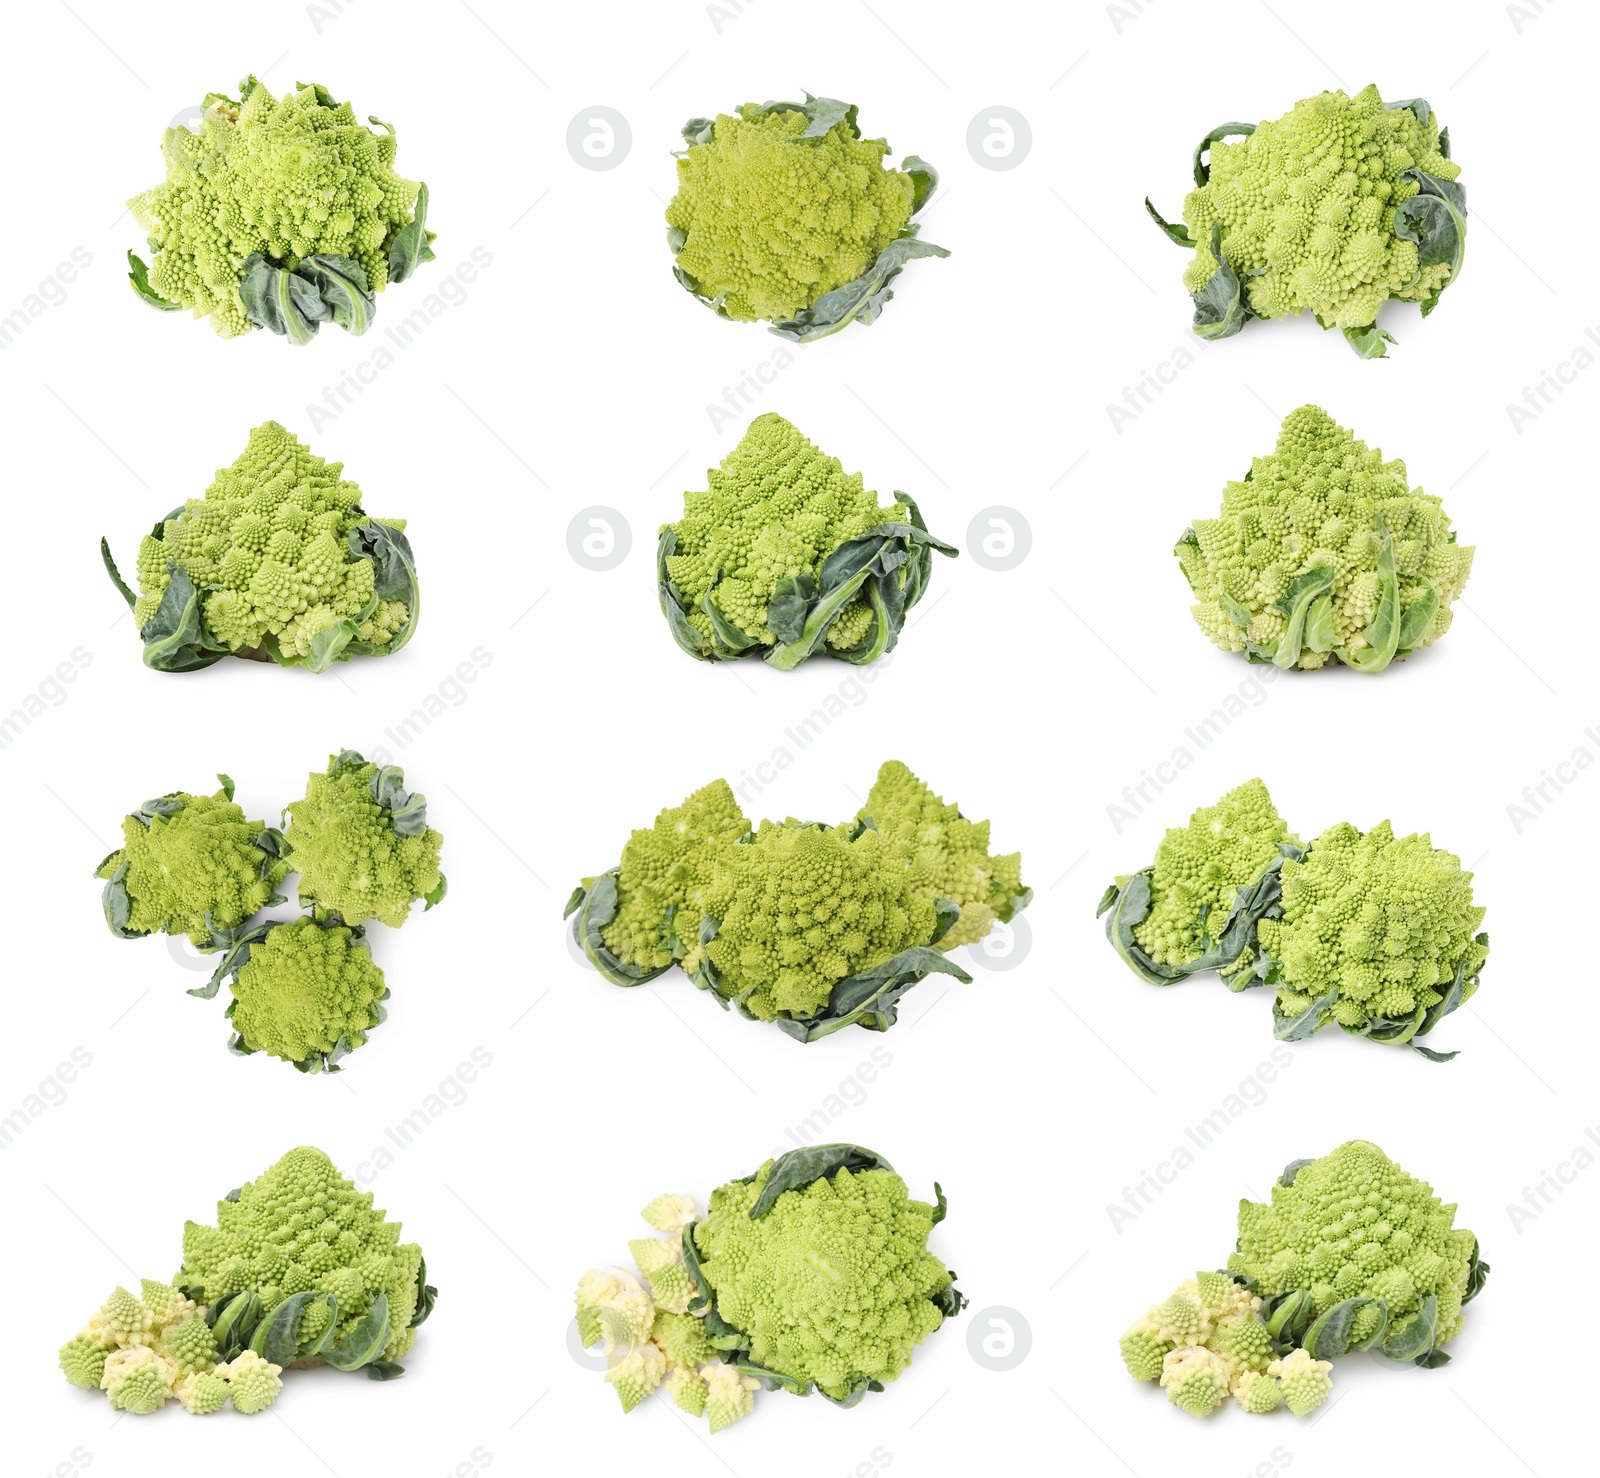 Image of Set with fresh Romanesco broccoli on white background